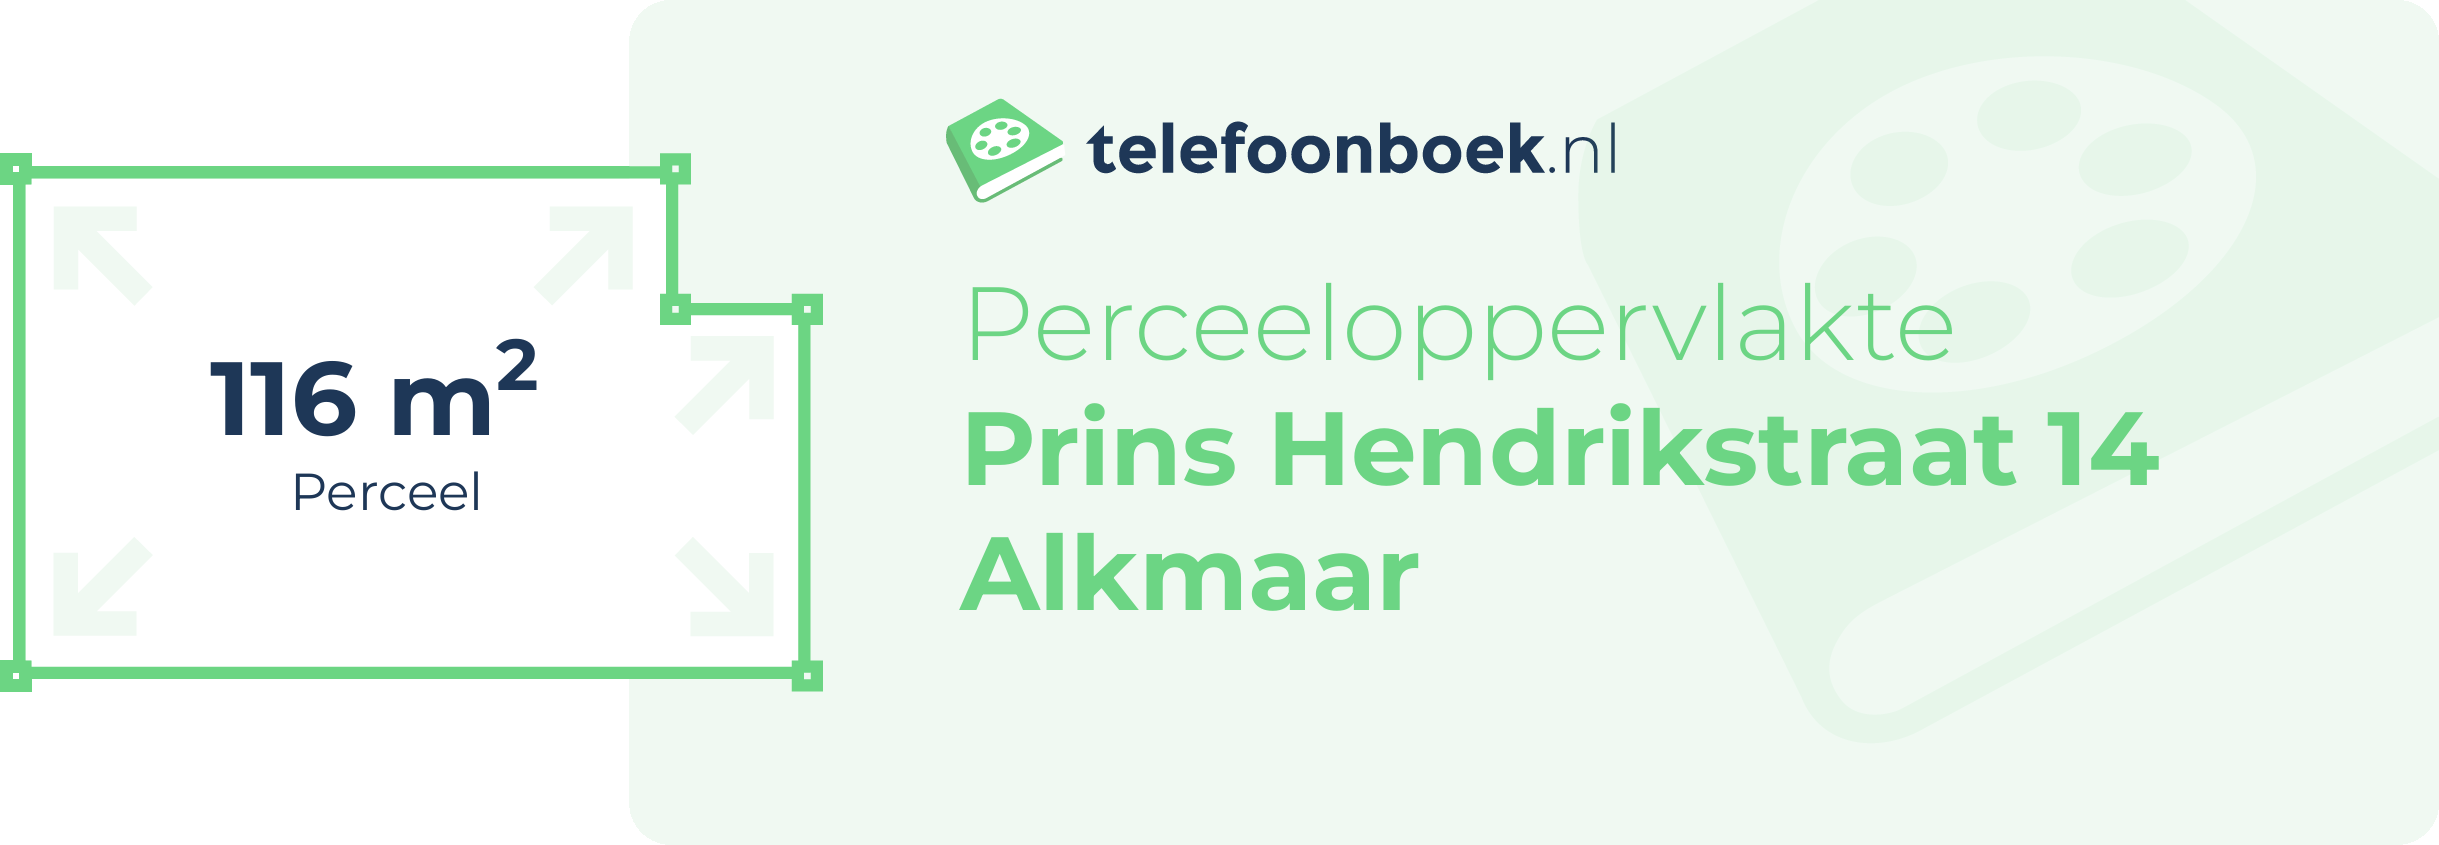 Perceeloppervlakte Prins Hendrikstraat 14 Alkmaar